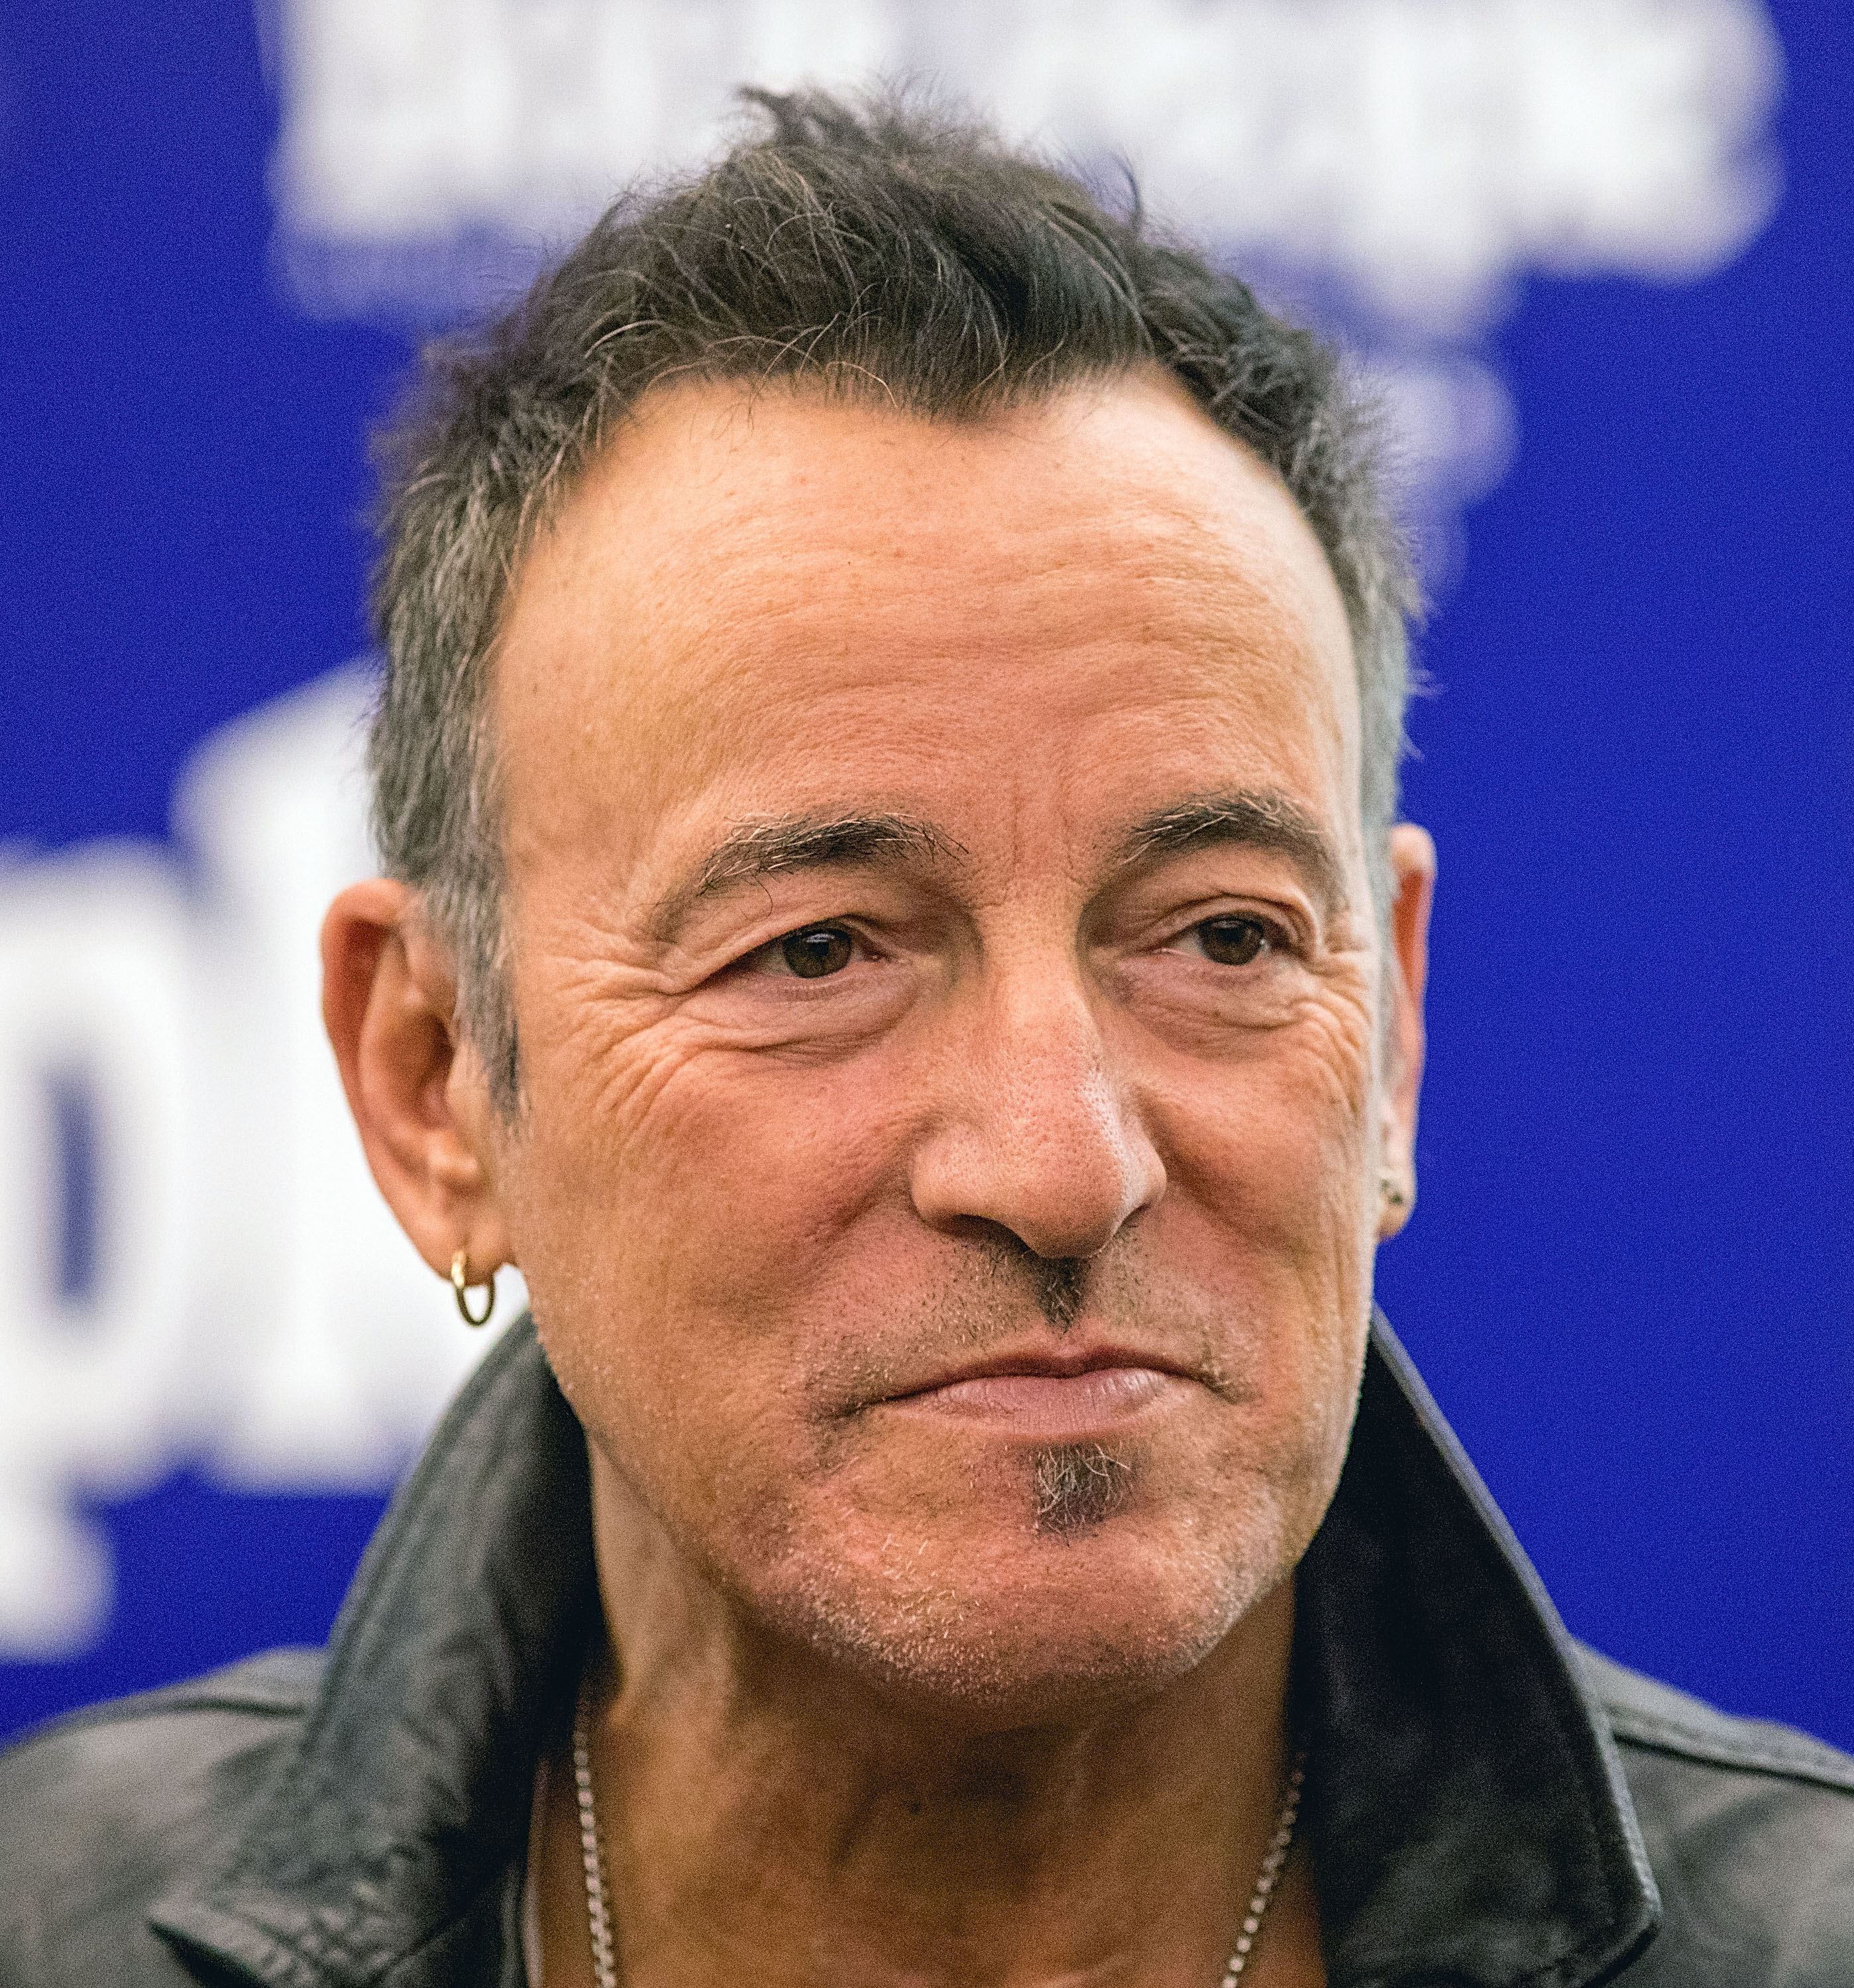 Bruce Springsteen à Austin, Texas, le 1er décembre 2016 | Source : Getty Images